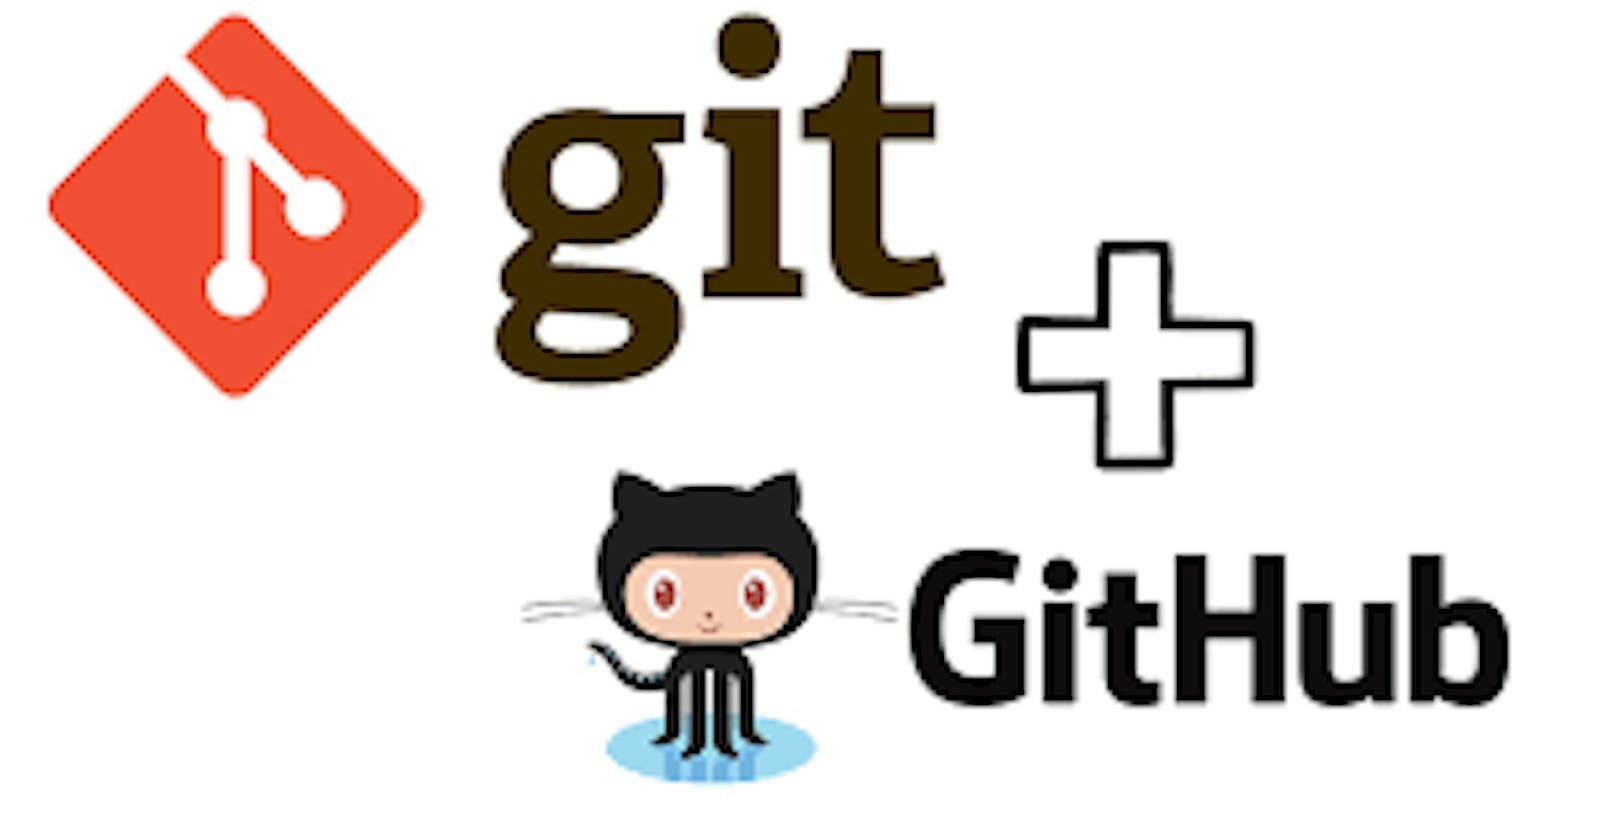 Day 8 Task: Basic Git & GitHub for DevOps Engineers.